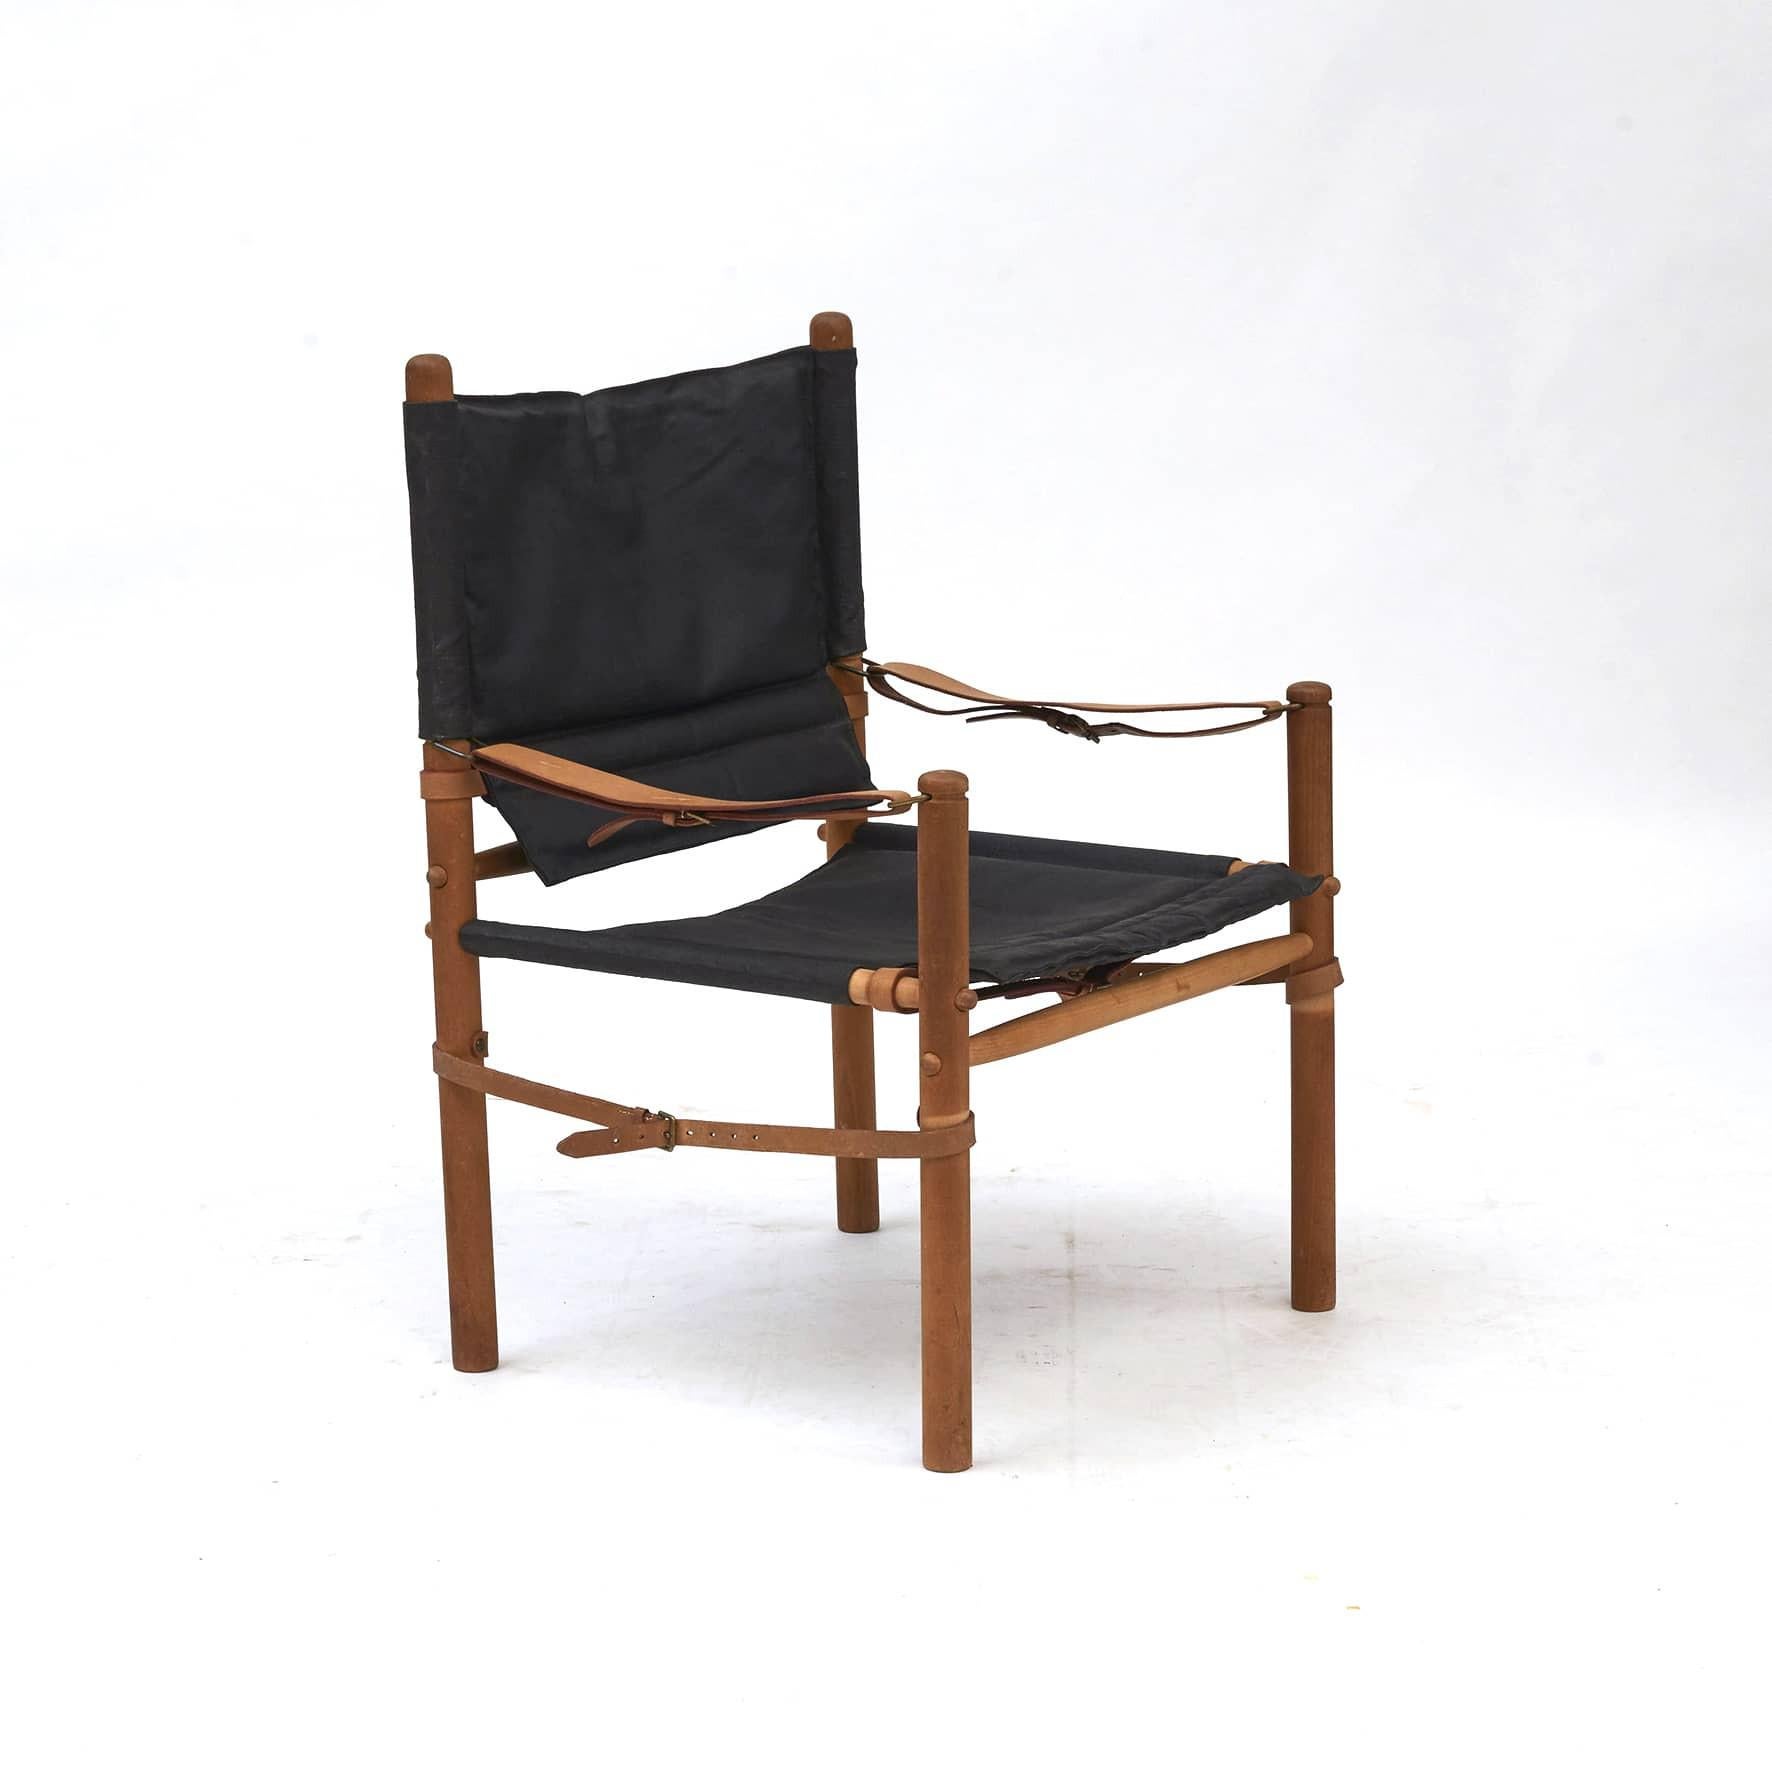 Paire de chaises Oasis Safari conçues par Axel Thygesen pour Interna, c. 1965.
Conçu et fabriqué dans les années 1960.
Cadre en hêtre avec une assise en toile noire.

Intouché et en bon état d'origine.
Vendu par paire.
  